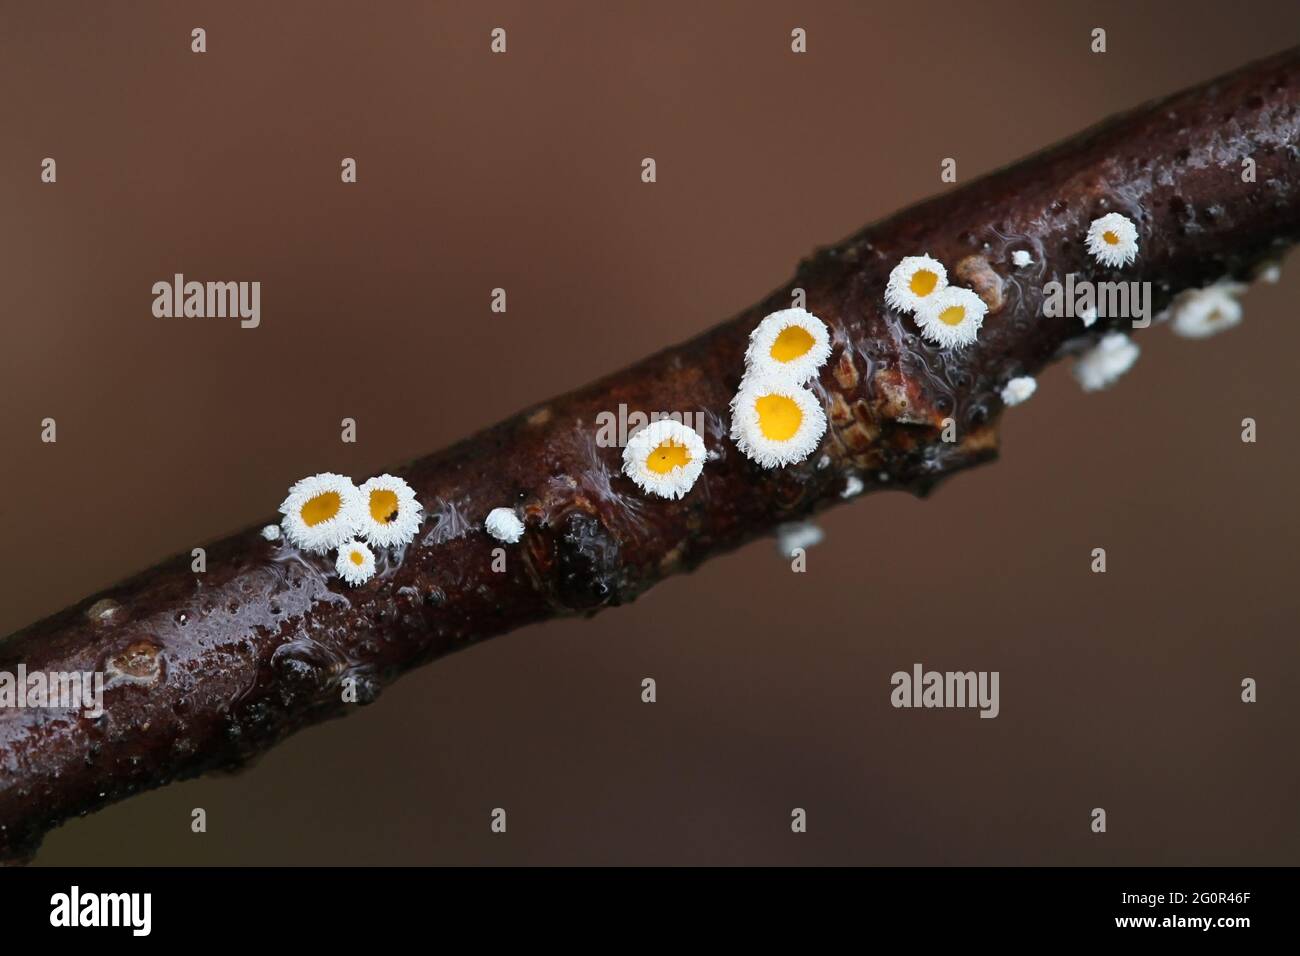 Lachnum bicolor, un champignon de la coupe de fées de Finlande sans nom anglais commun Banque D'Images